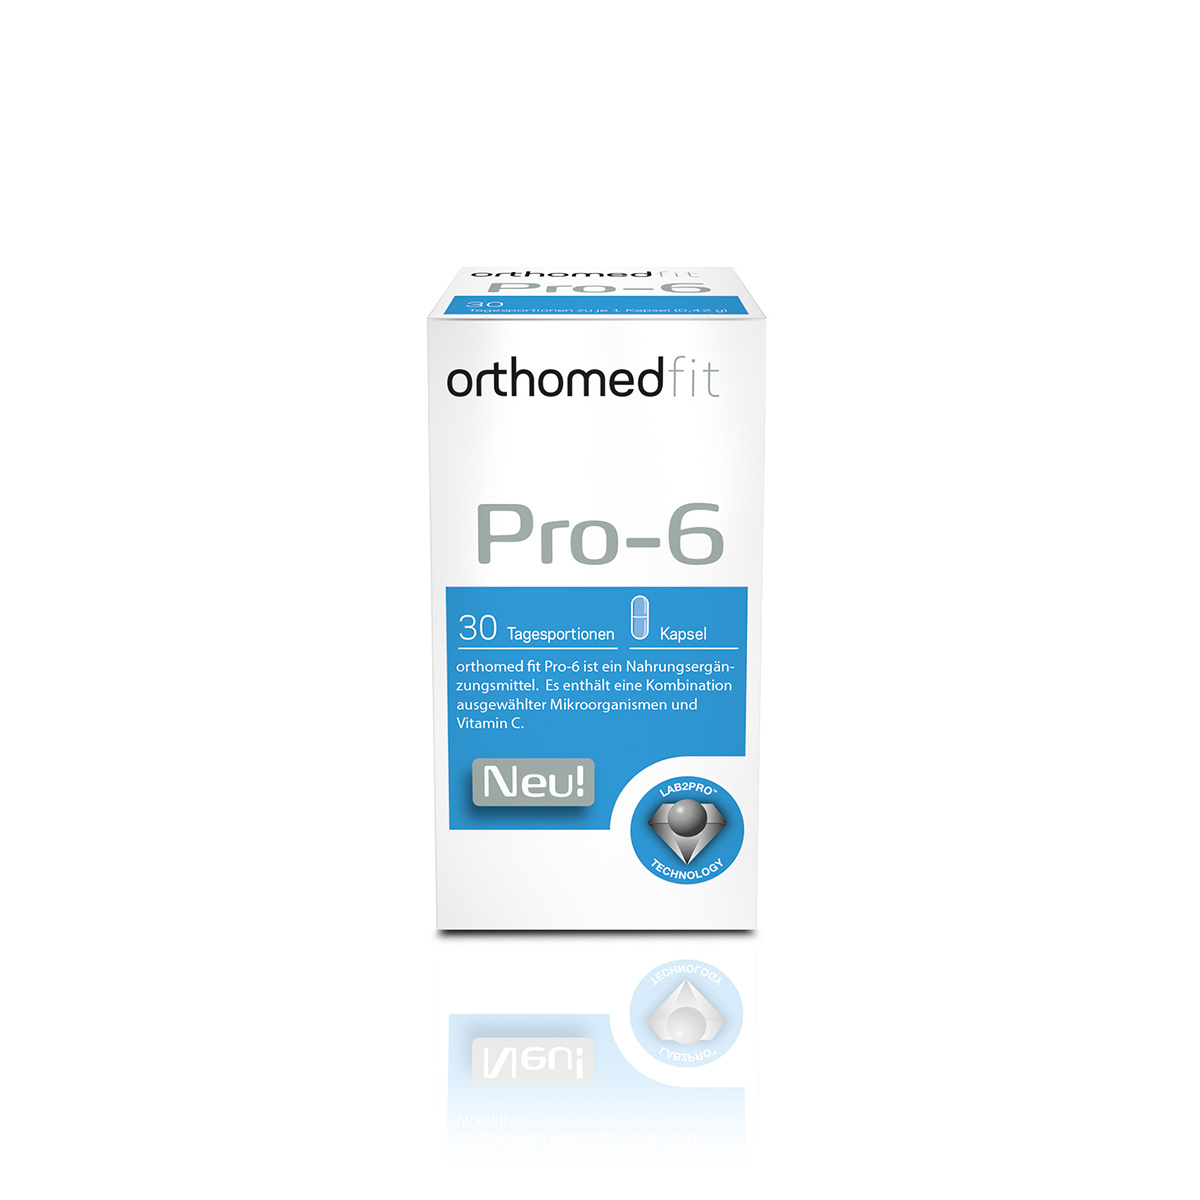 orthomed fit Pro-6 10er